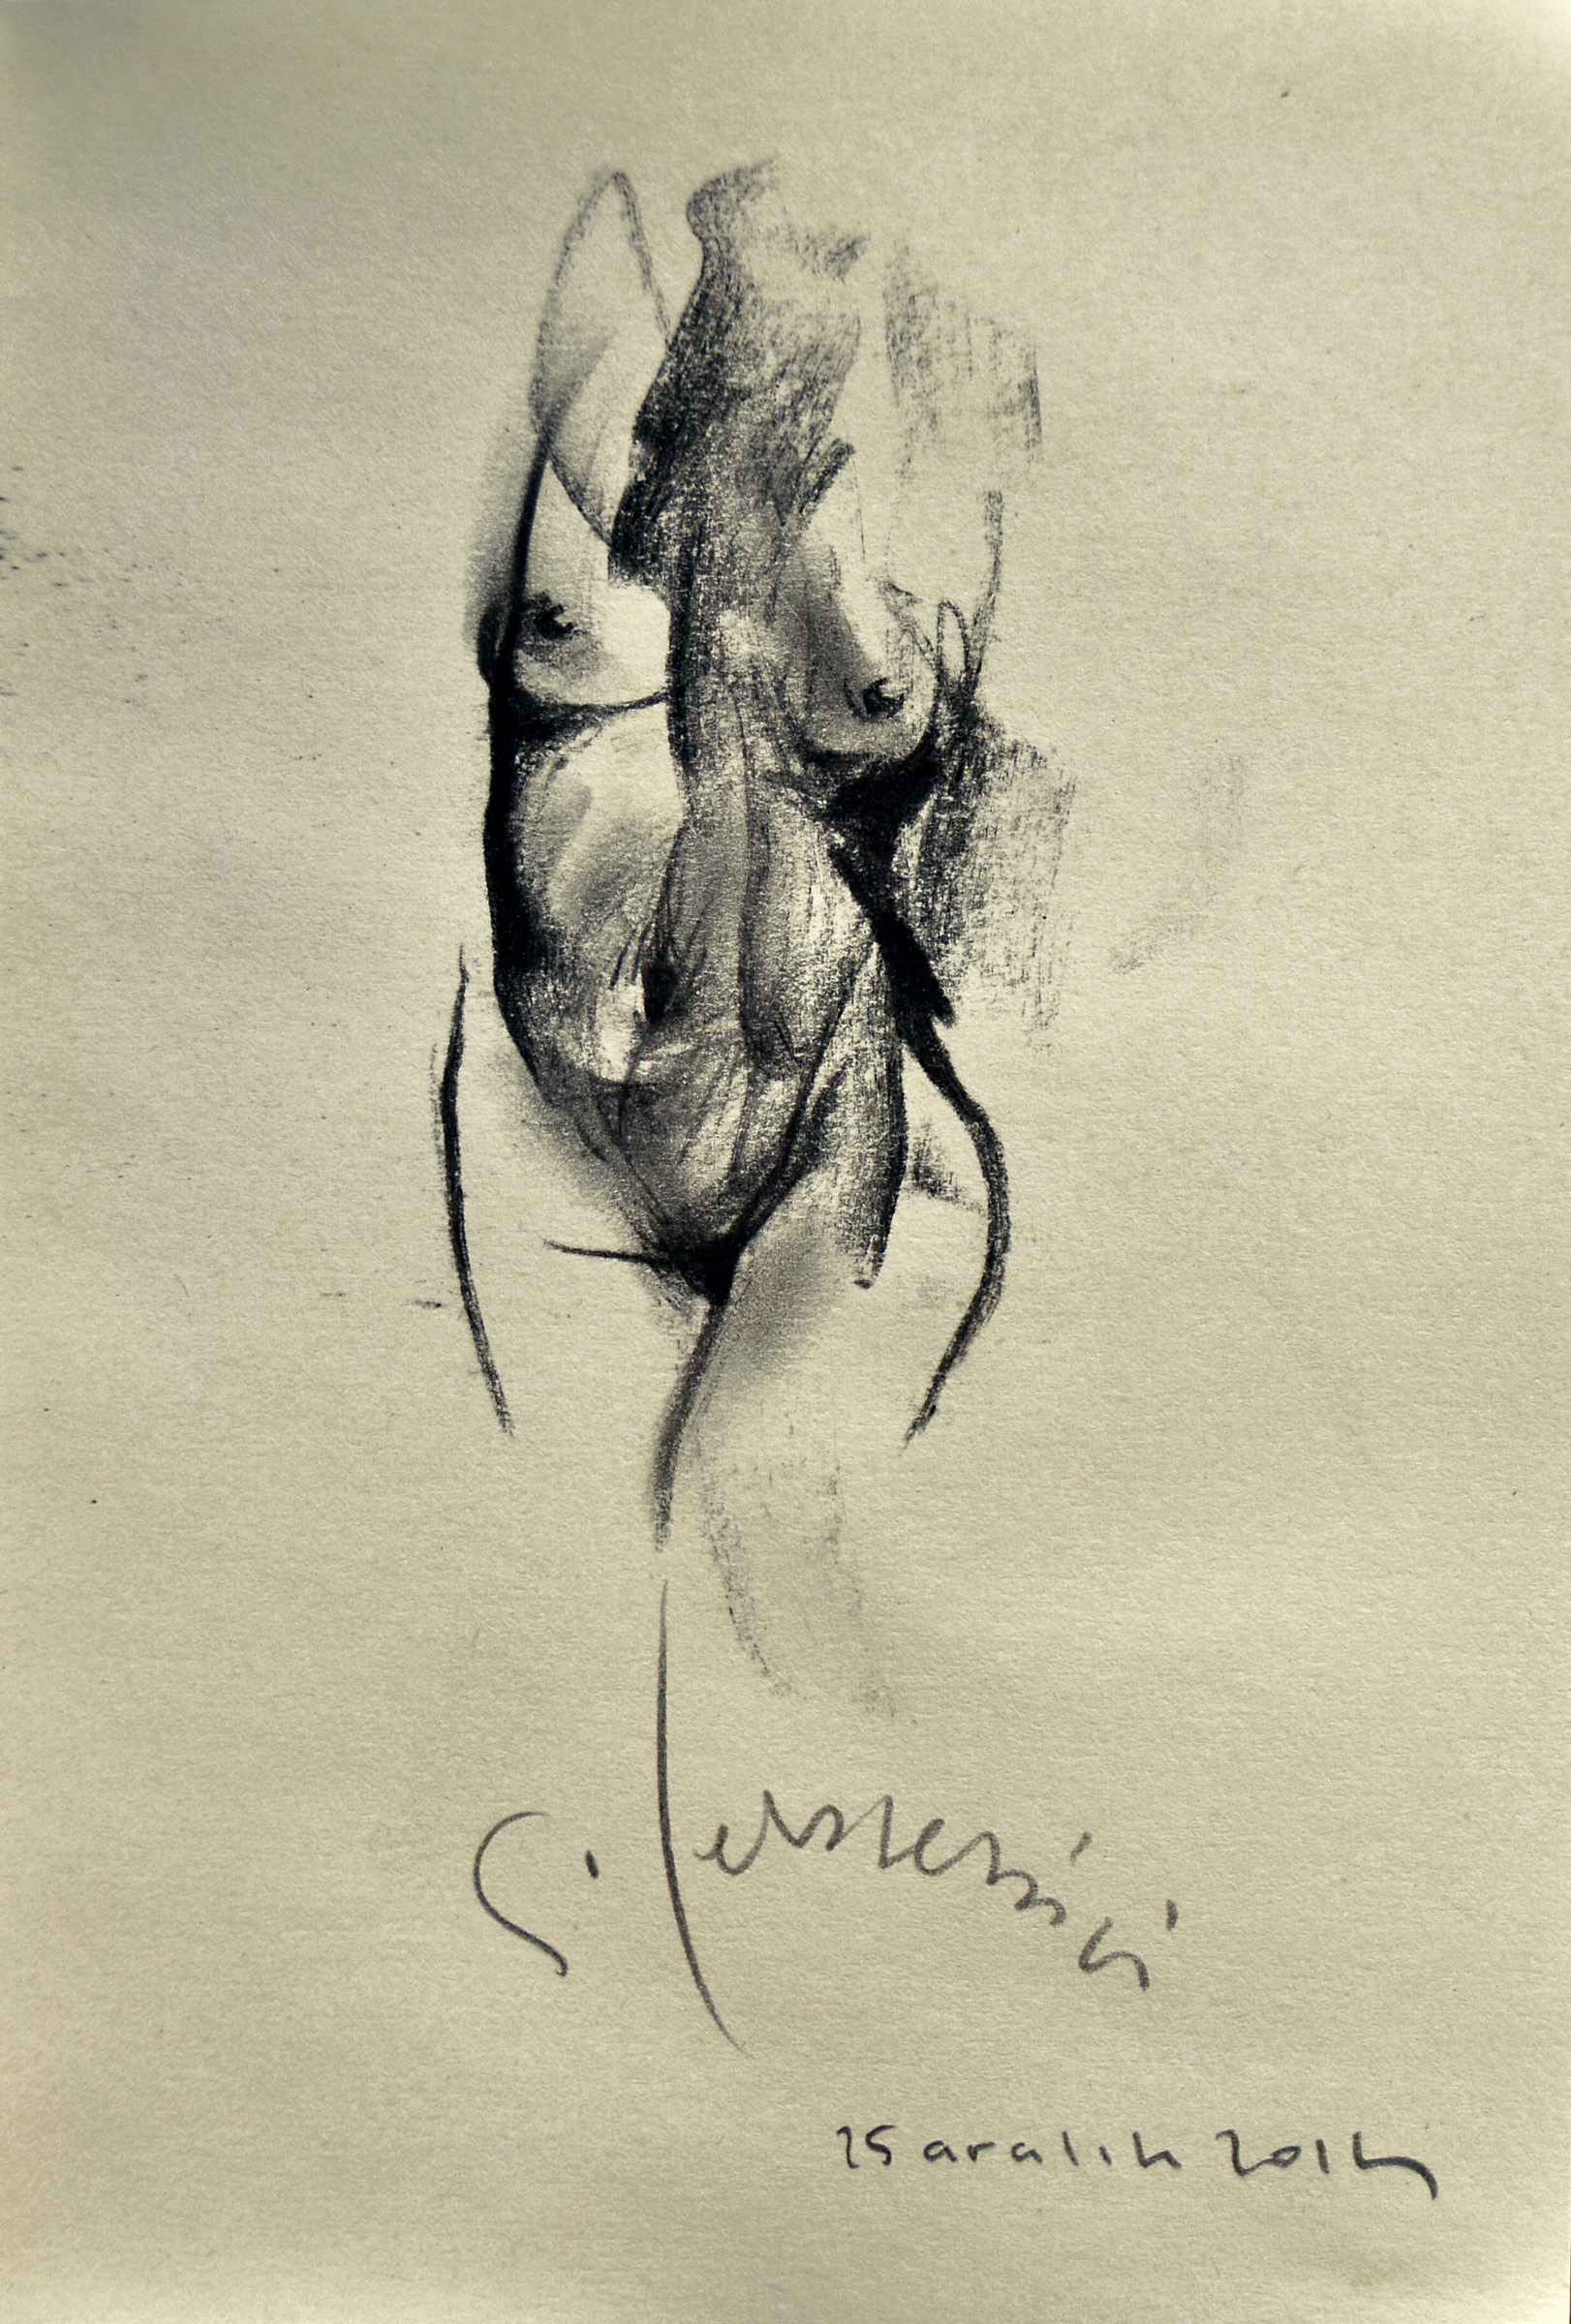 Desen-Drawing 2014 füzen-charcoal(defter-notebook) 16x11 cm..